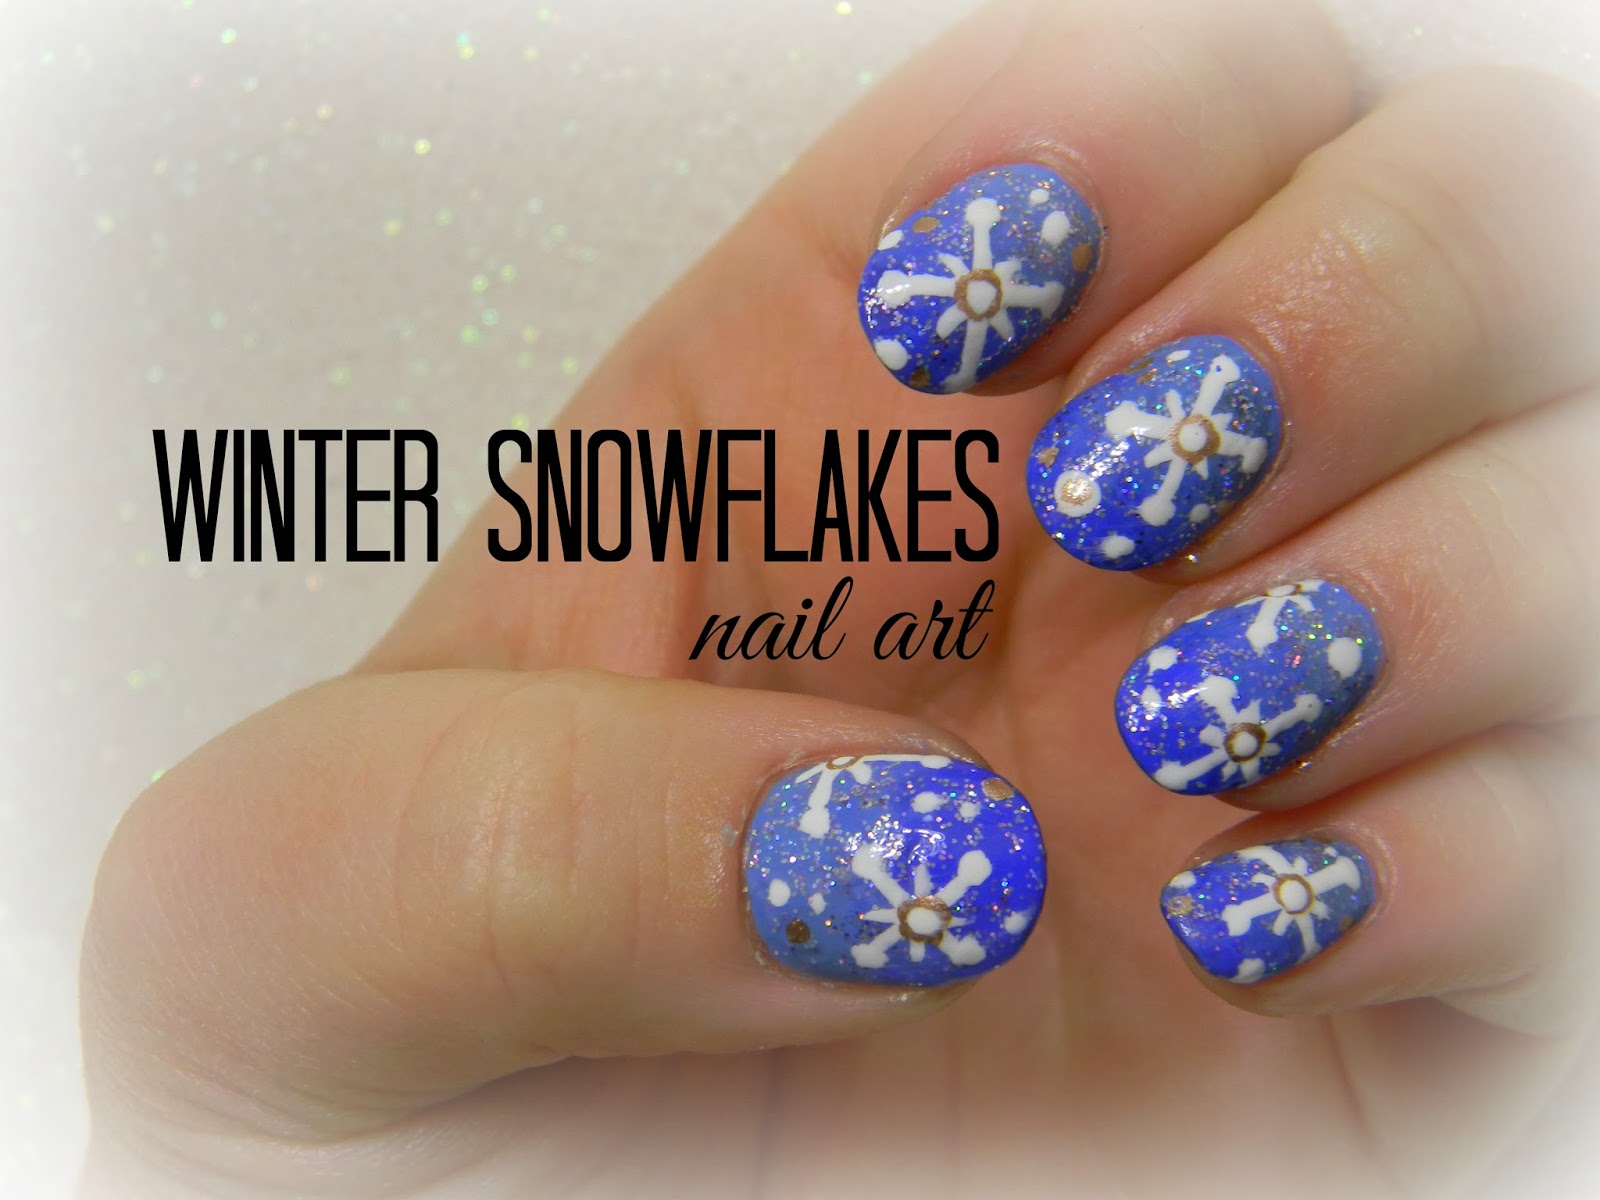 snowflakes on nail art